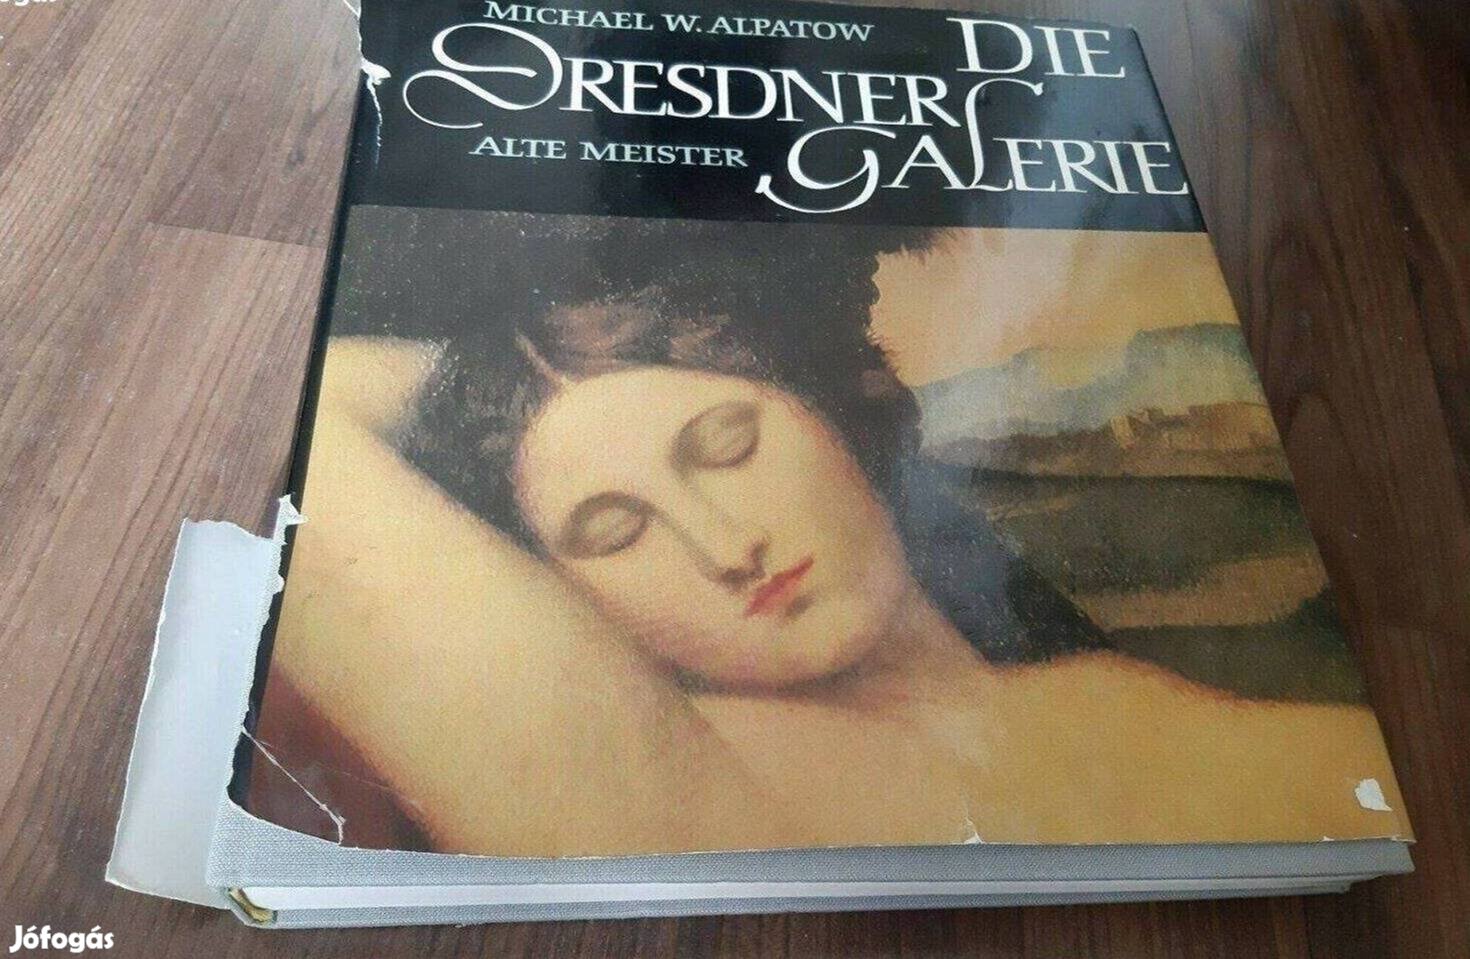 Die Dresdner Galerie könyv